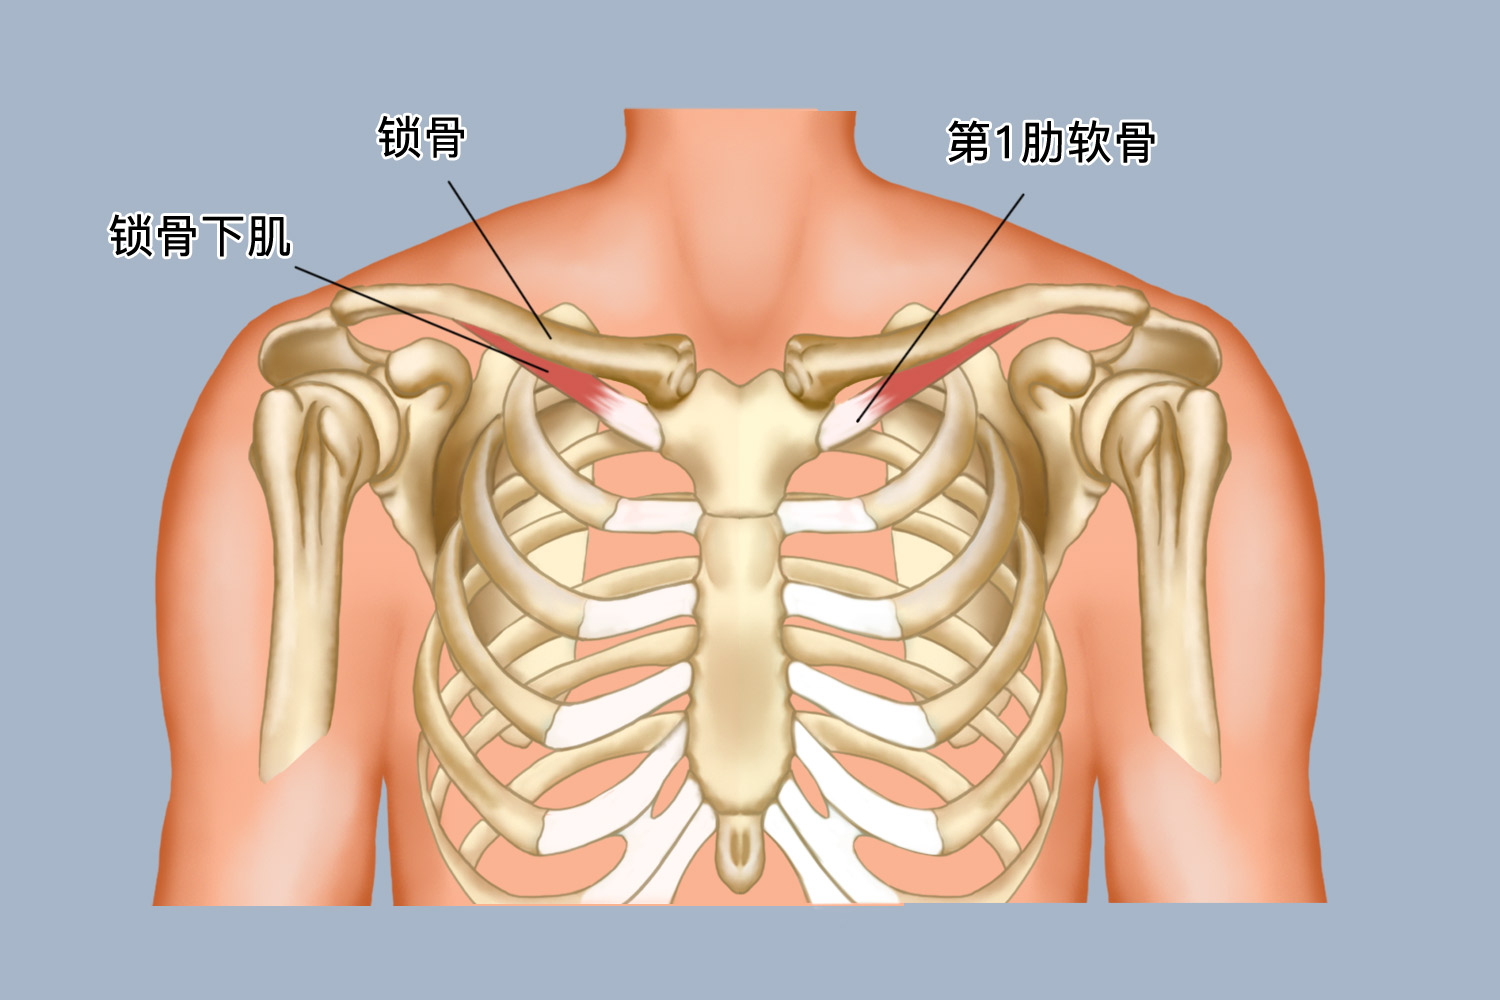 锁骨位于颈下,桥架于胸骨与肩峰之间,为唯一联系肩胛带与躯干的支架